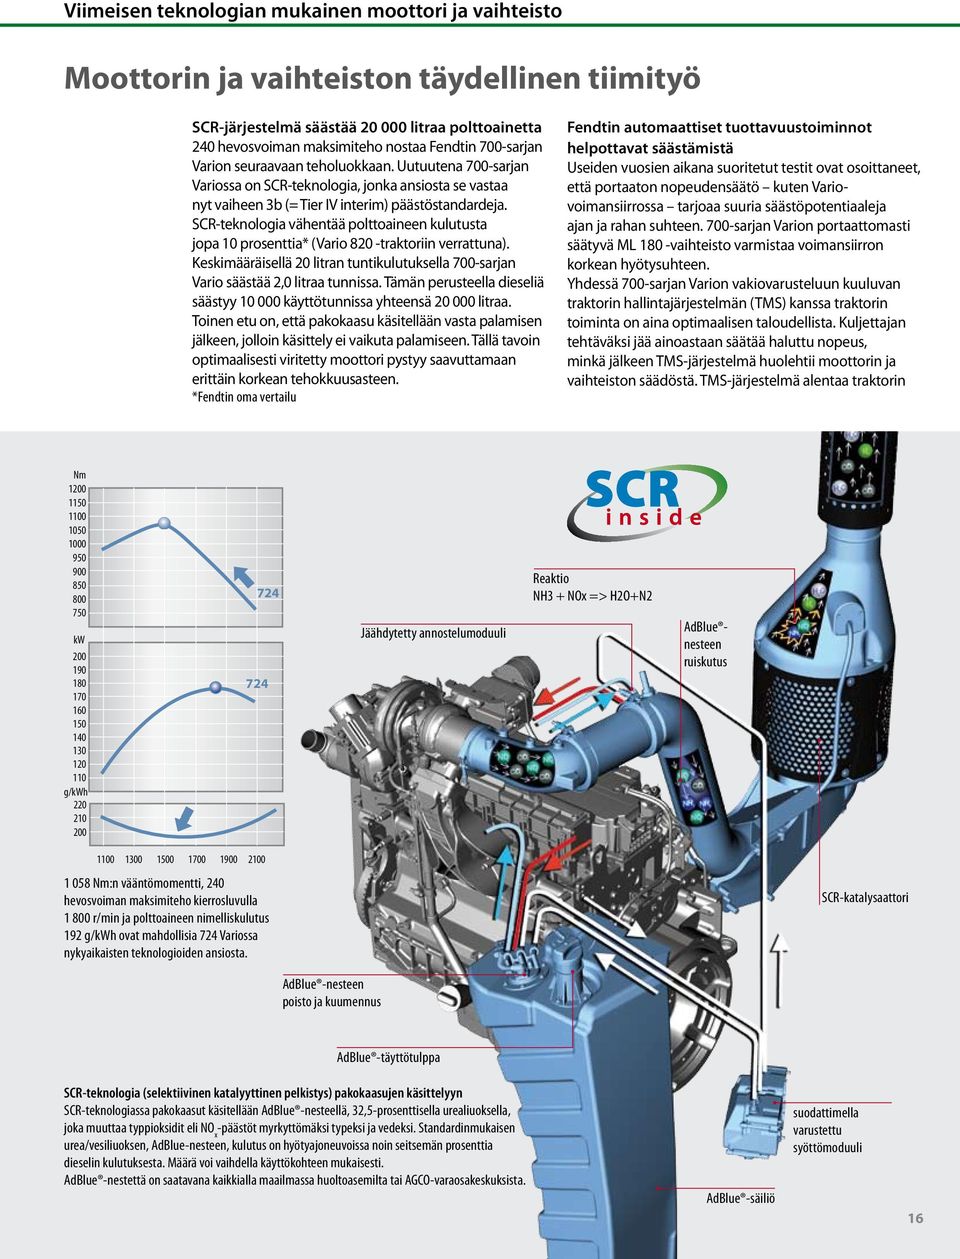 SCR-teknologia vähentää polttoaineen kulutusta jopa 10 prosenttia* (Vario 820 -traktoriin verrattuna). Keskimääräisellä 20 litran tuntikulutuksella 700-sarjan Vario säästää 2,0 litraa tunnissa.